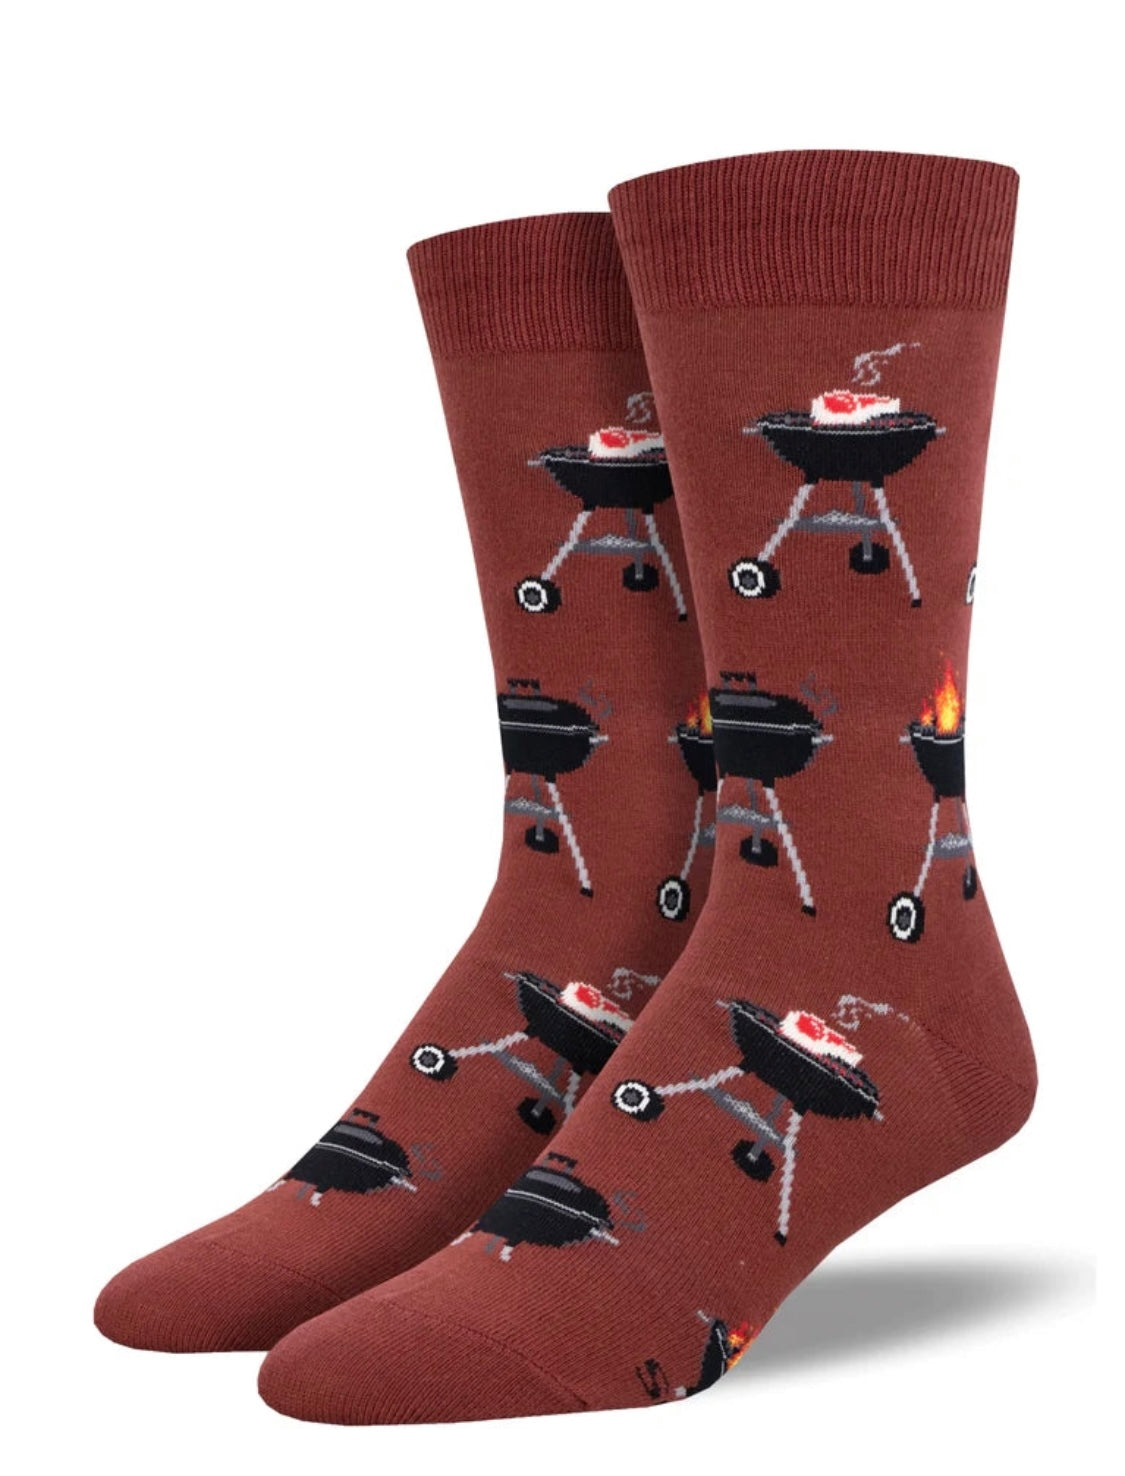 Socksmith - Novelty Socks